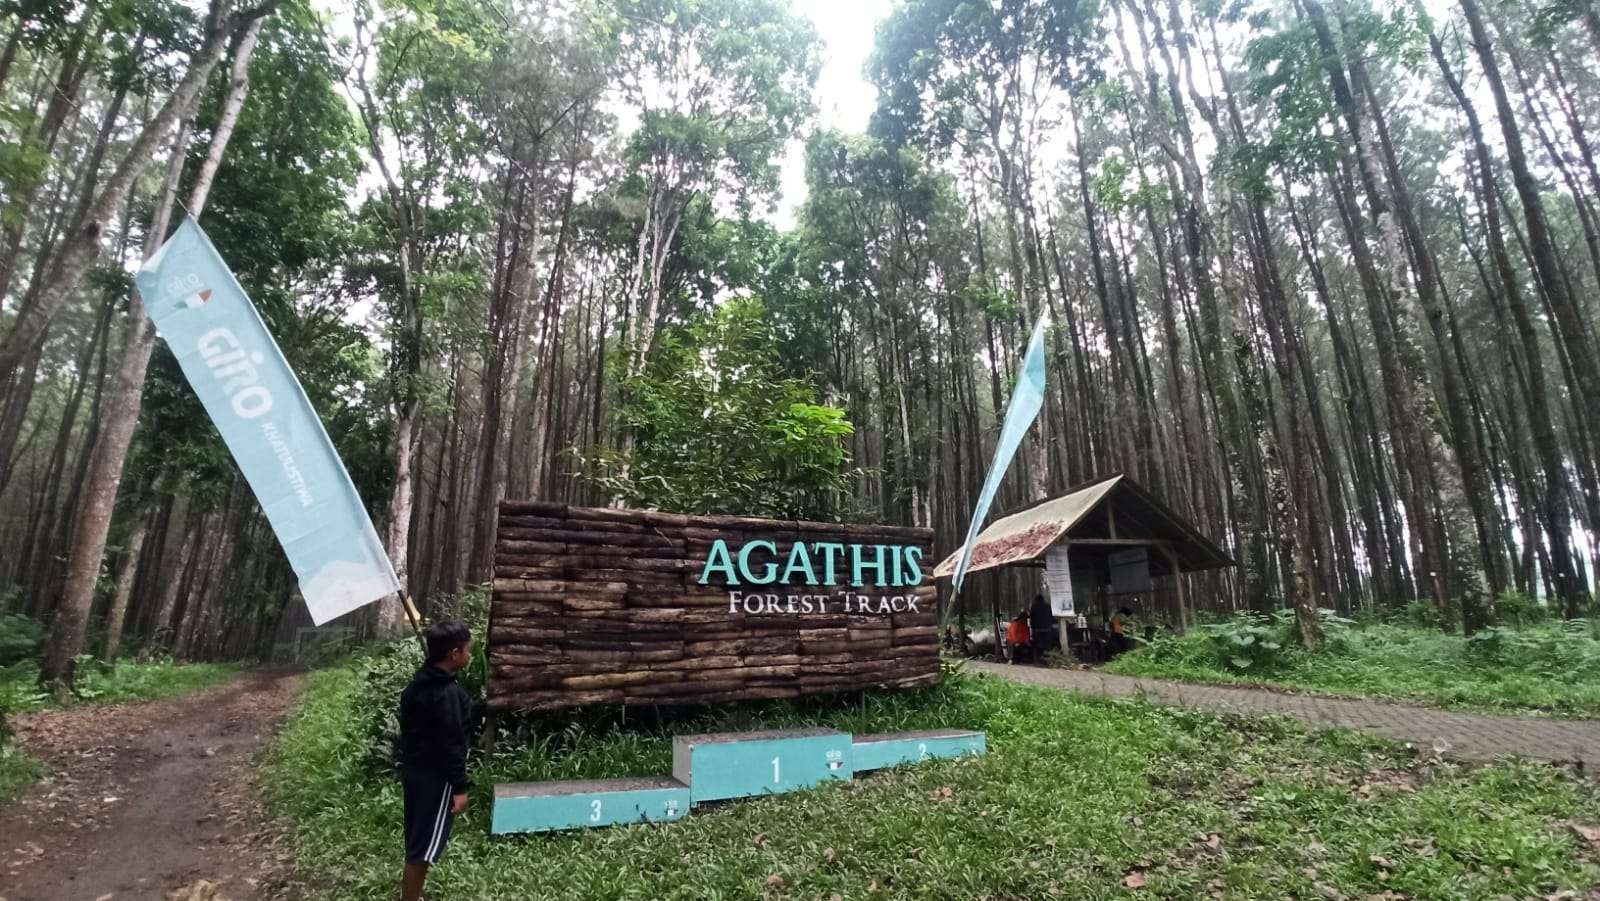 Agathis Forest pilihan wisata alam di Banyuwangi, Jawa Timur. Hamparan hutan pinus eksotis. (Foto: Muh Hujaini/Ngopibareng.id)